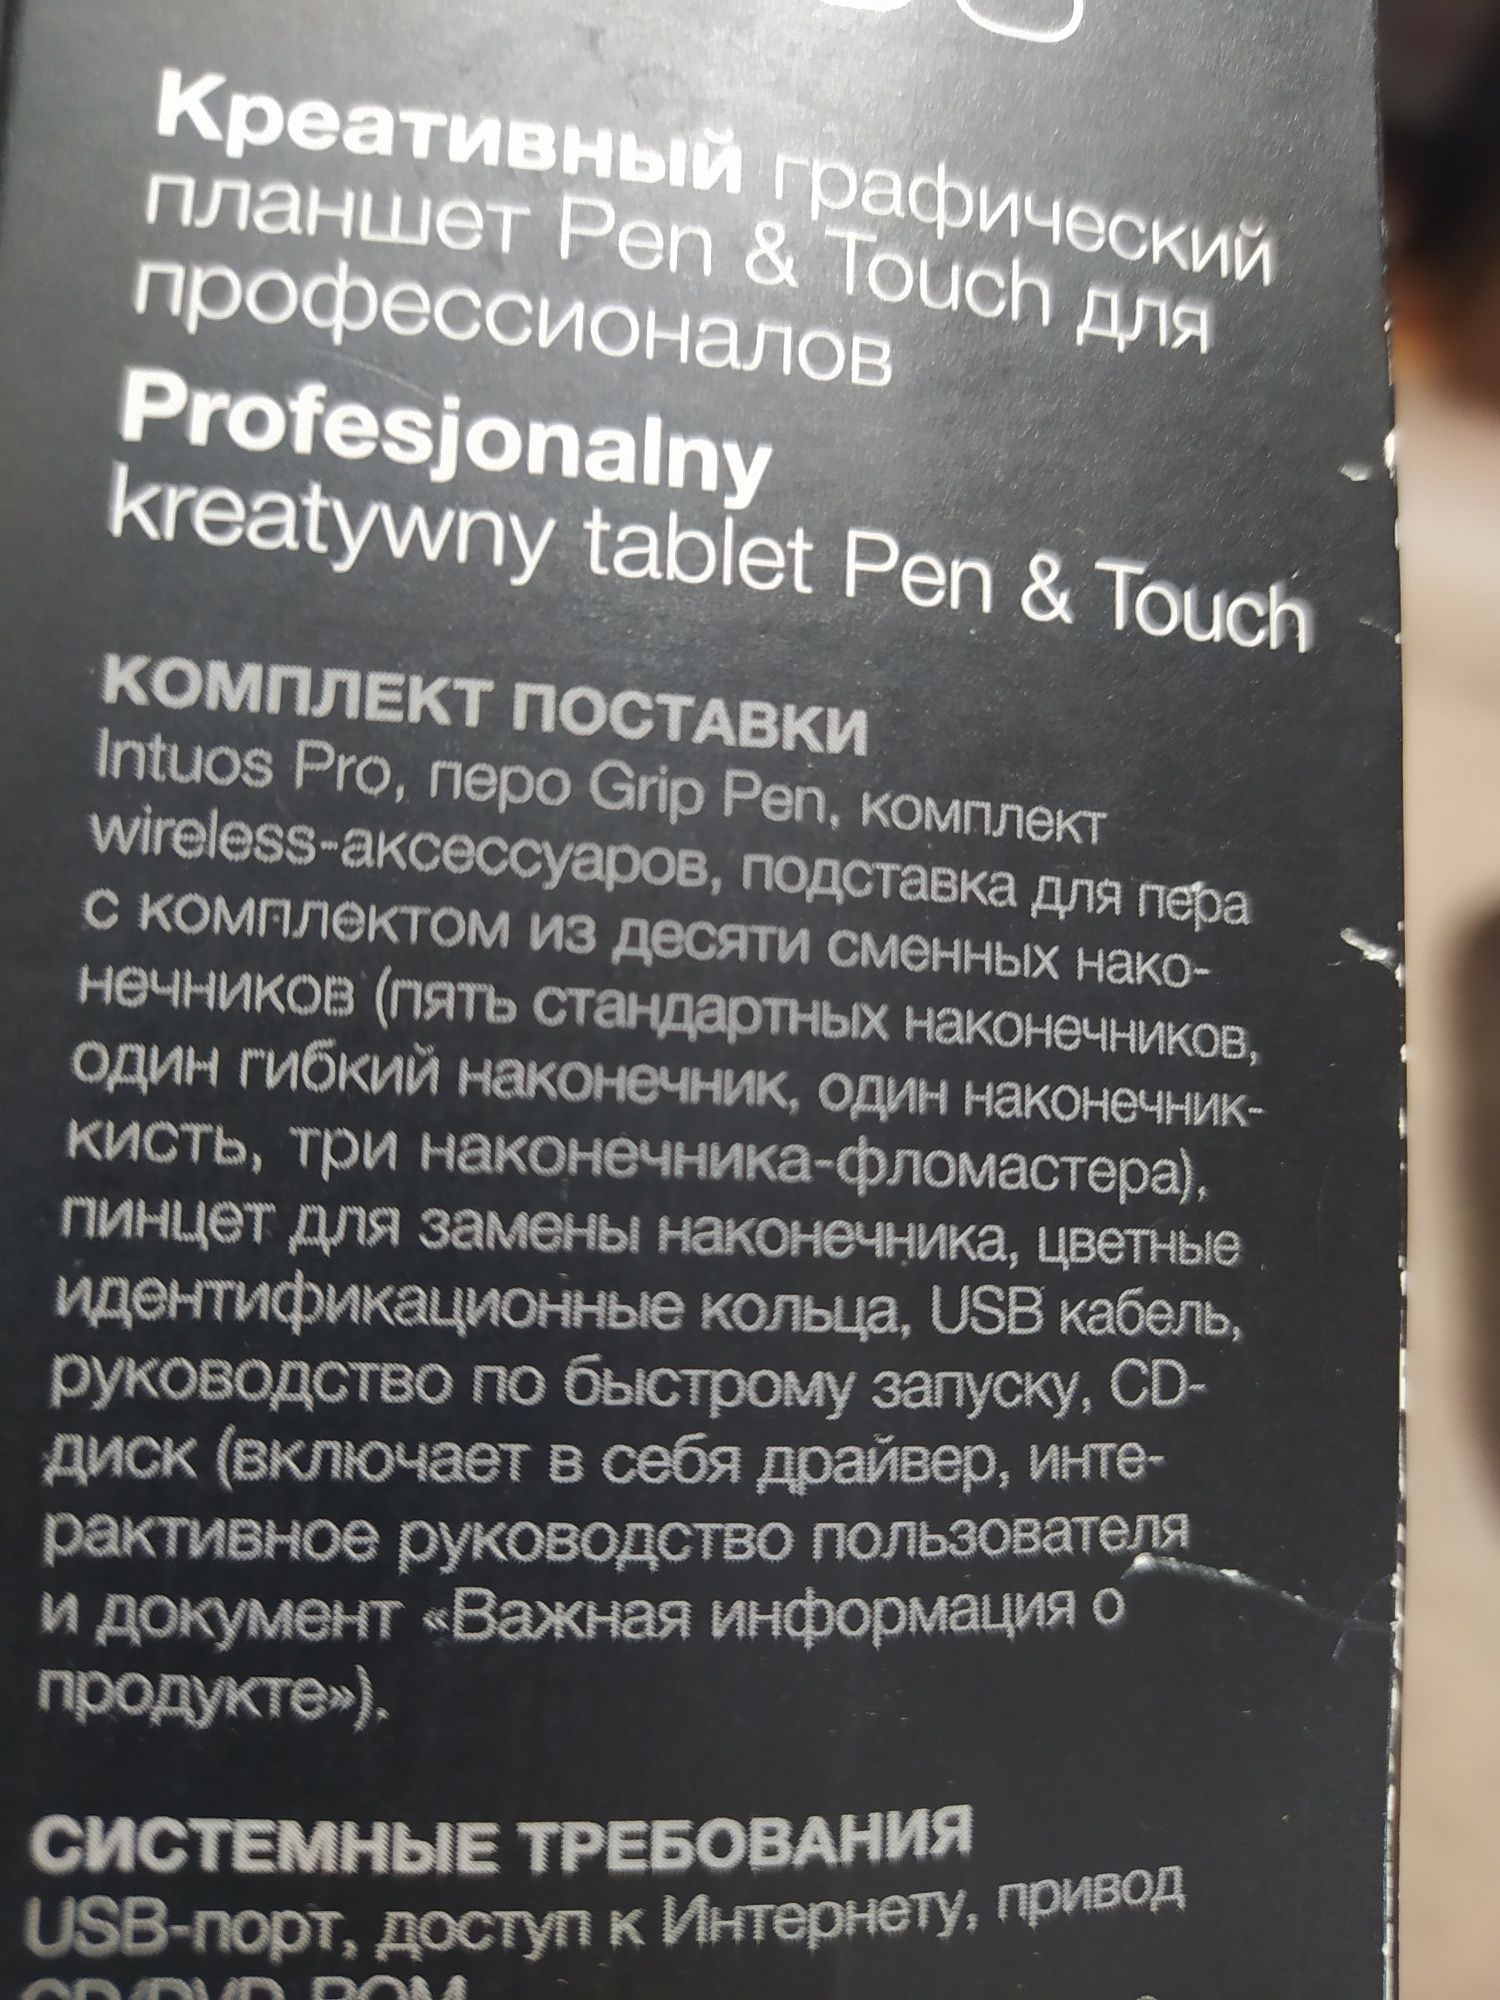 Креативний графічний планшет Pen & Touch для професіоналів